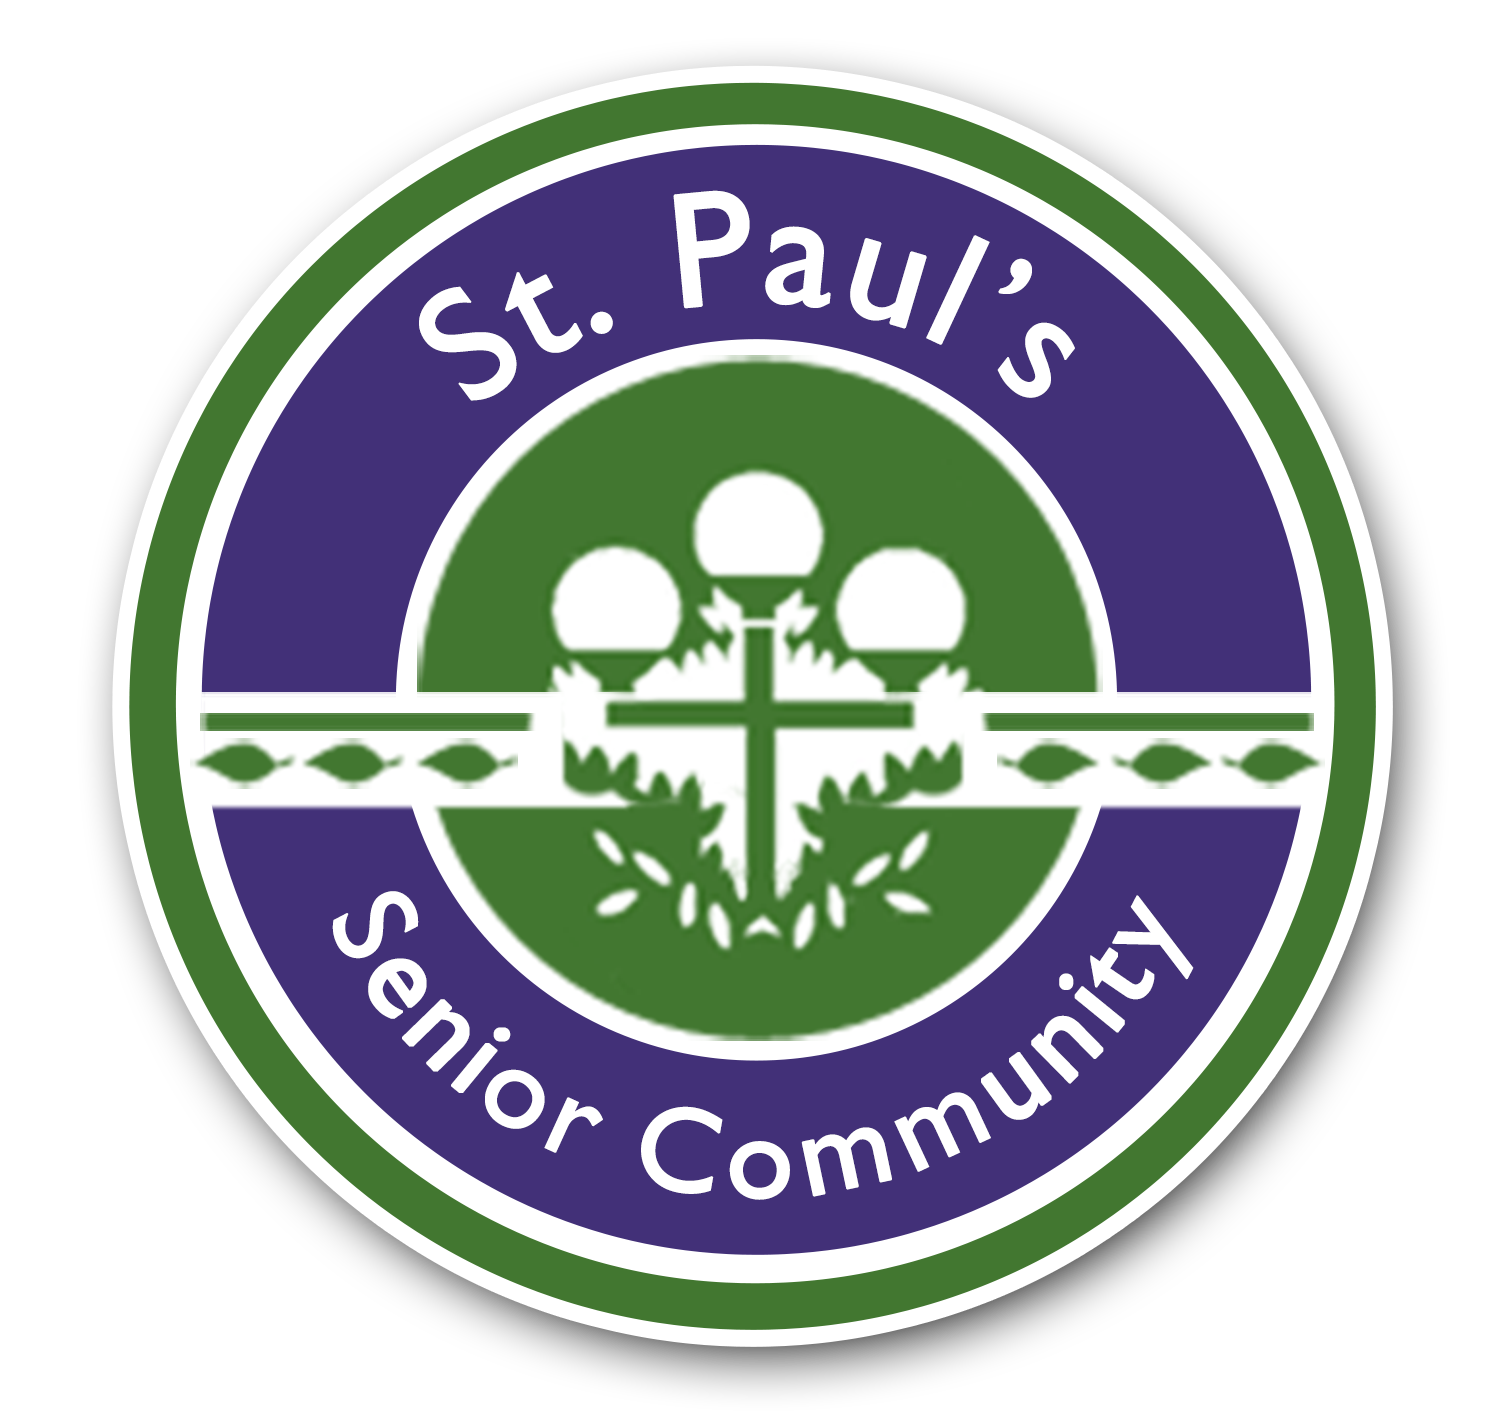 St paul's senior community logo